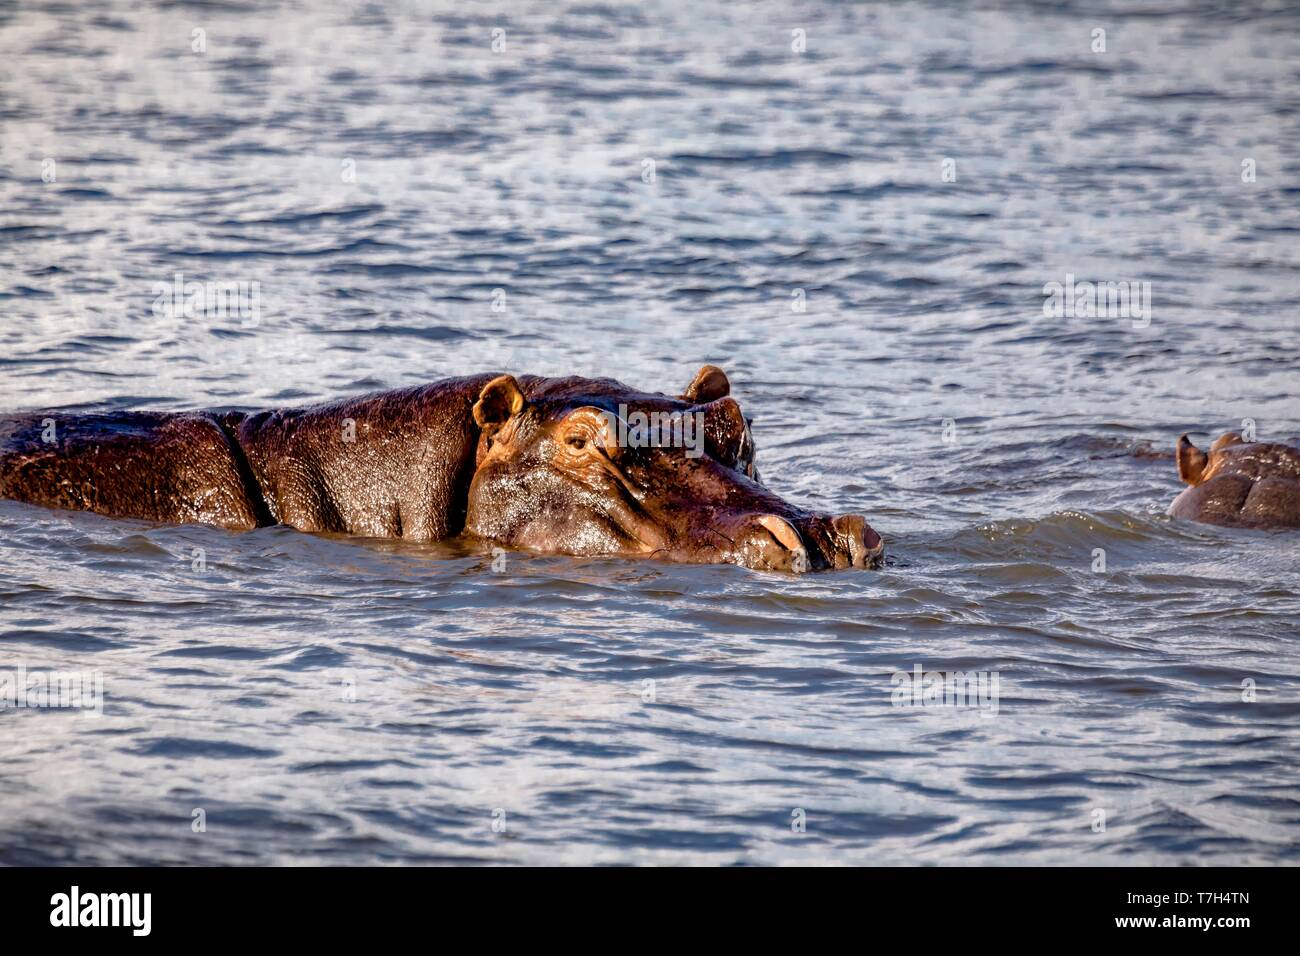 Swimming Hippopotamus in the river Chobe in Botswana Stock Photo